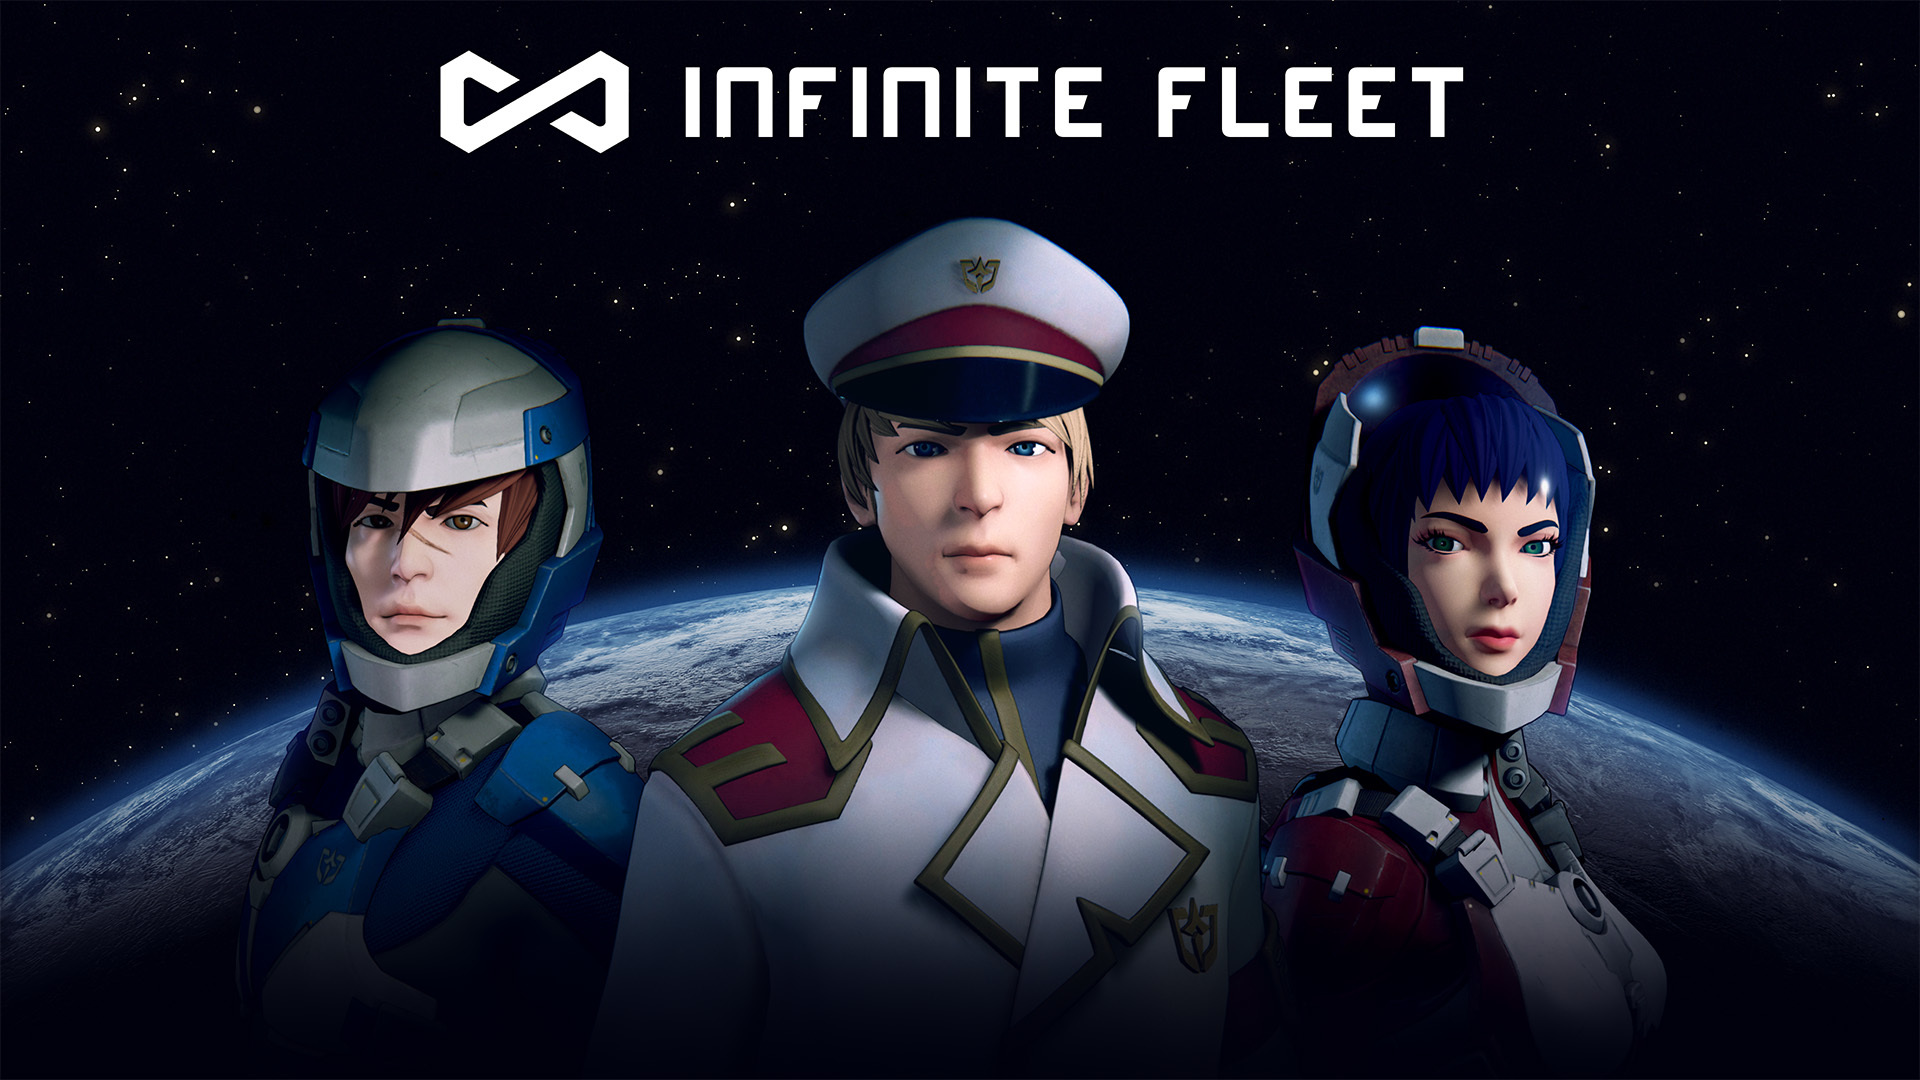 科幻mmo 無限艦隊infinite Fleet 在歐美展開alpha 封測預告本週將揭露中文預告影片 Infinite Fleet 巴哈姆特